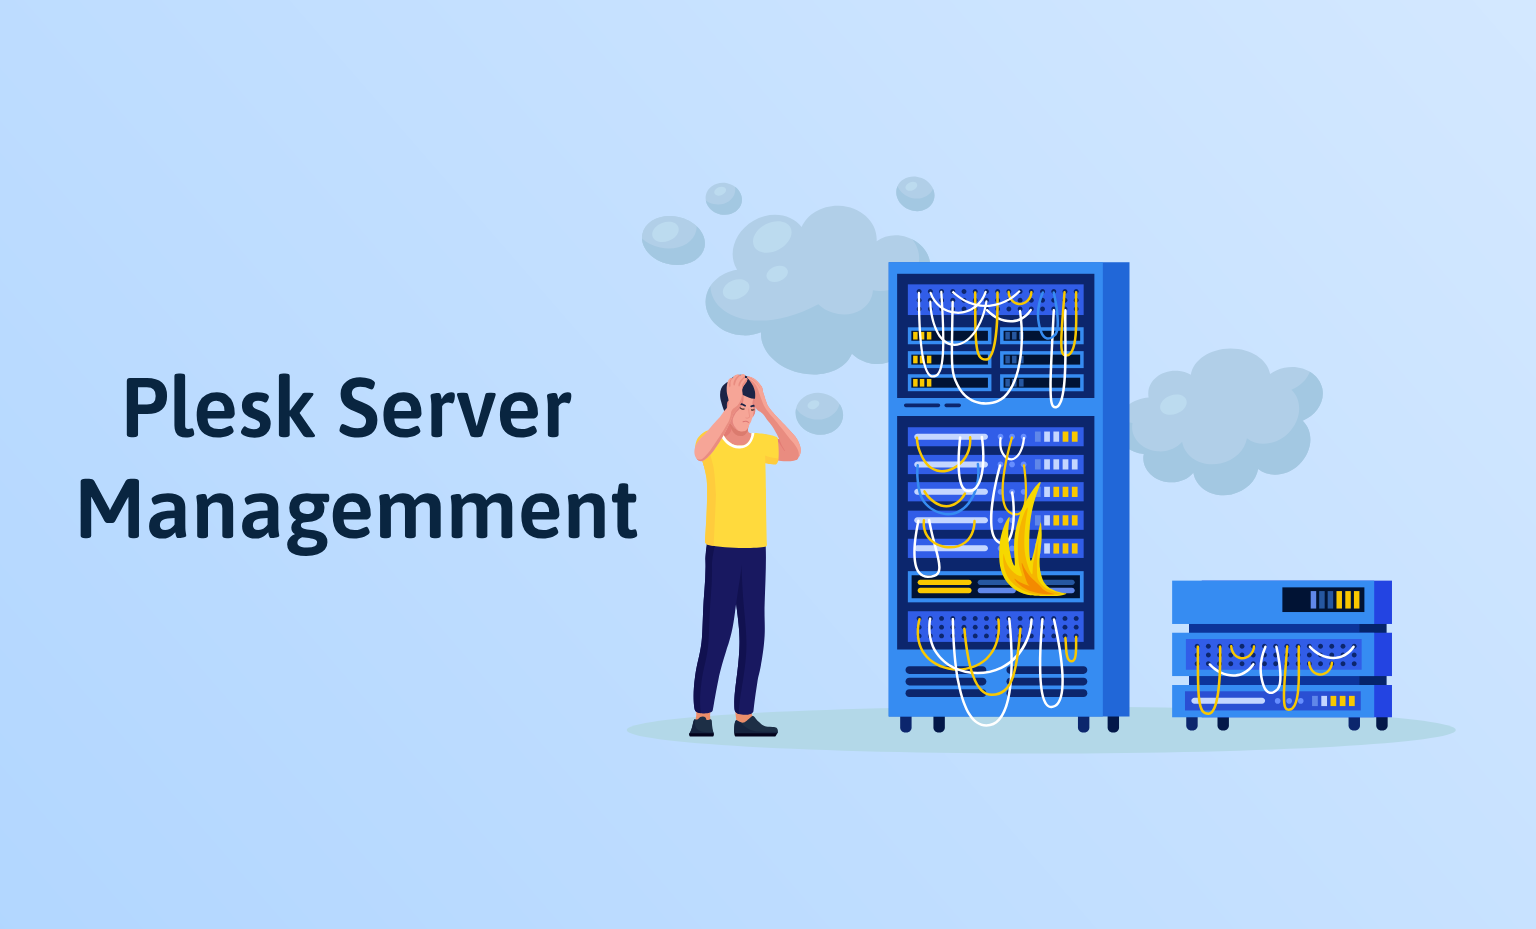 Plesk server management service